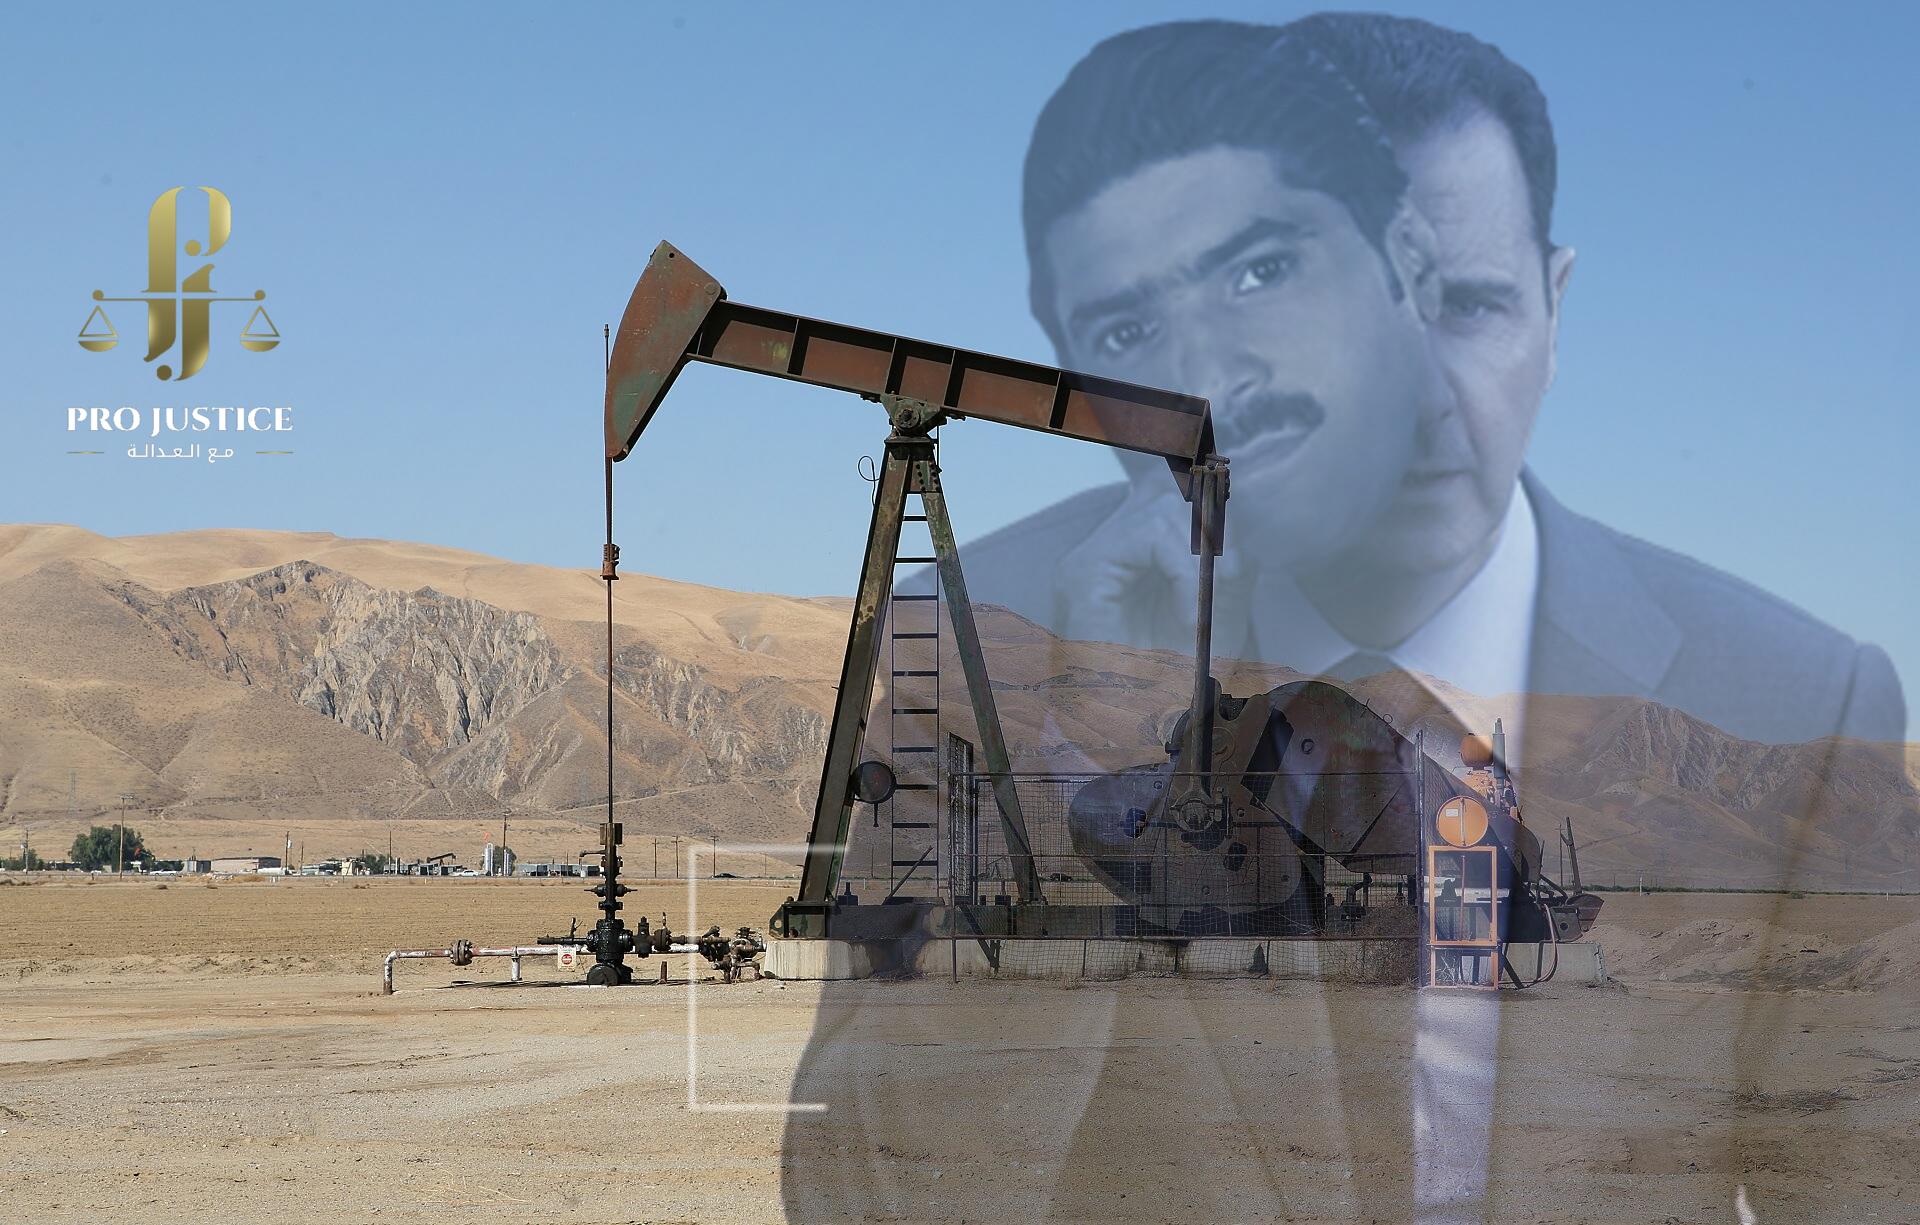 “نظام الأسد” يرفع أسعار الوقود مع بيع شركة خاصة للمشتقات النفطية